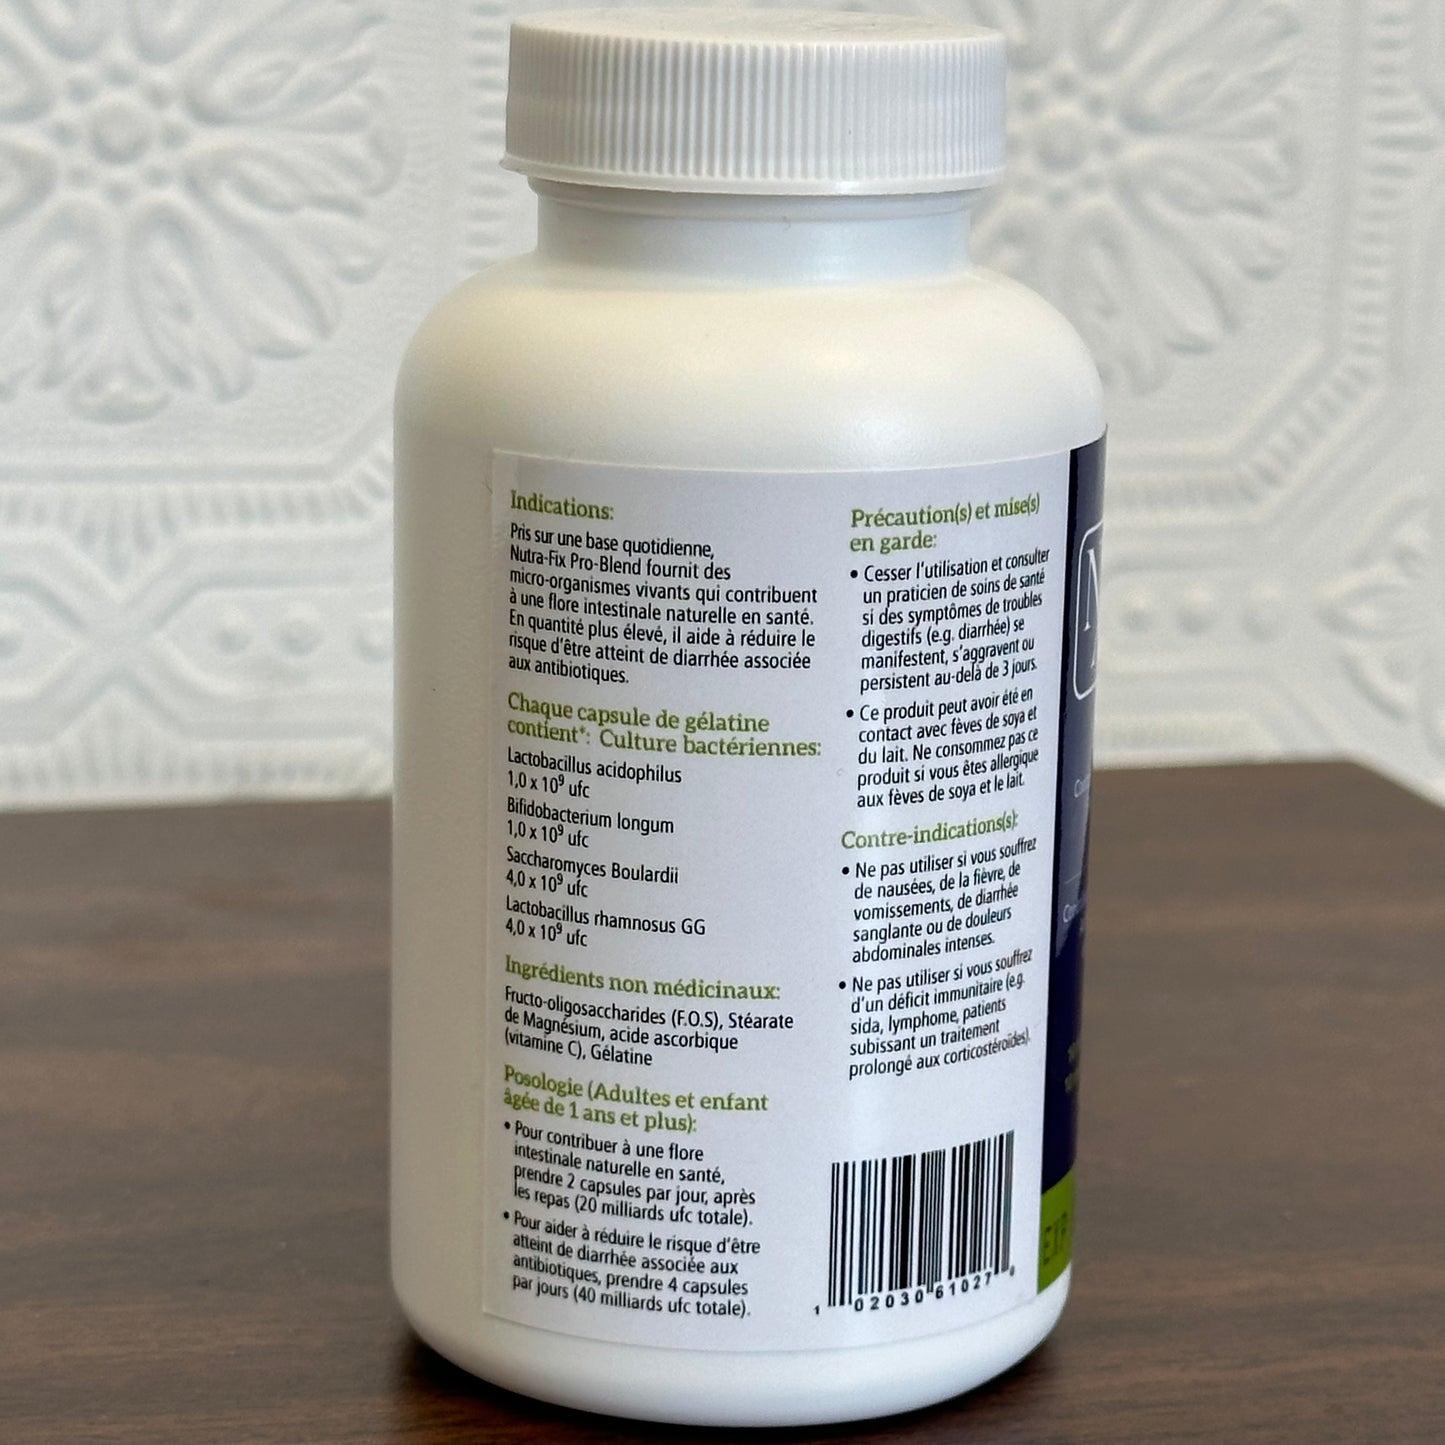 Nutra FX - Probiotic Blend